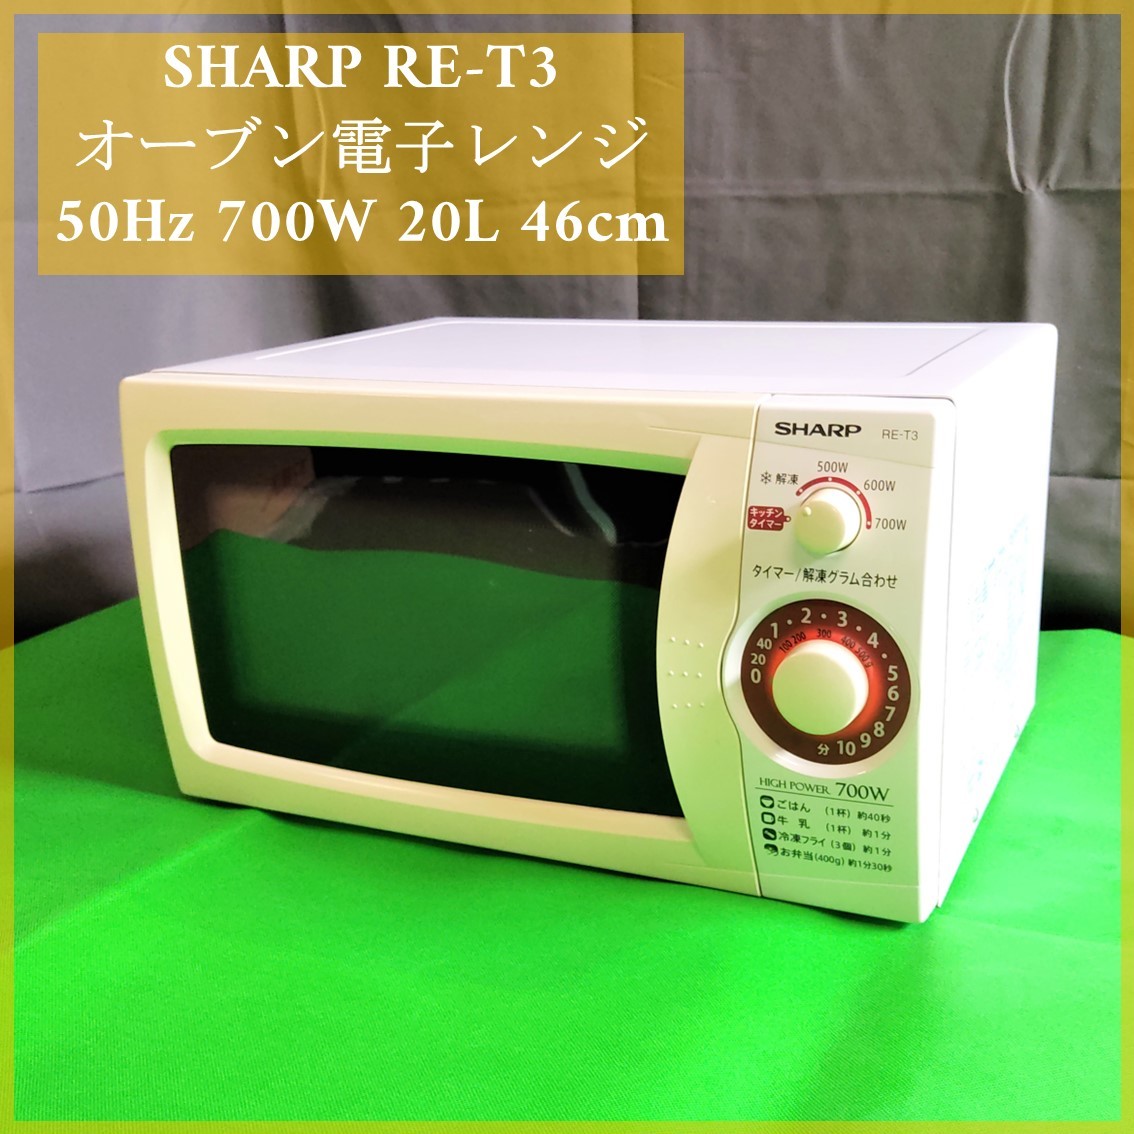 送料無料) SHARP オーブン電子レンジ 選べるワット数 RE-T3-W5 2016年製 東日本 50Hz 700W 約45cm 動作品 中古  シャープ